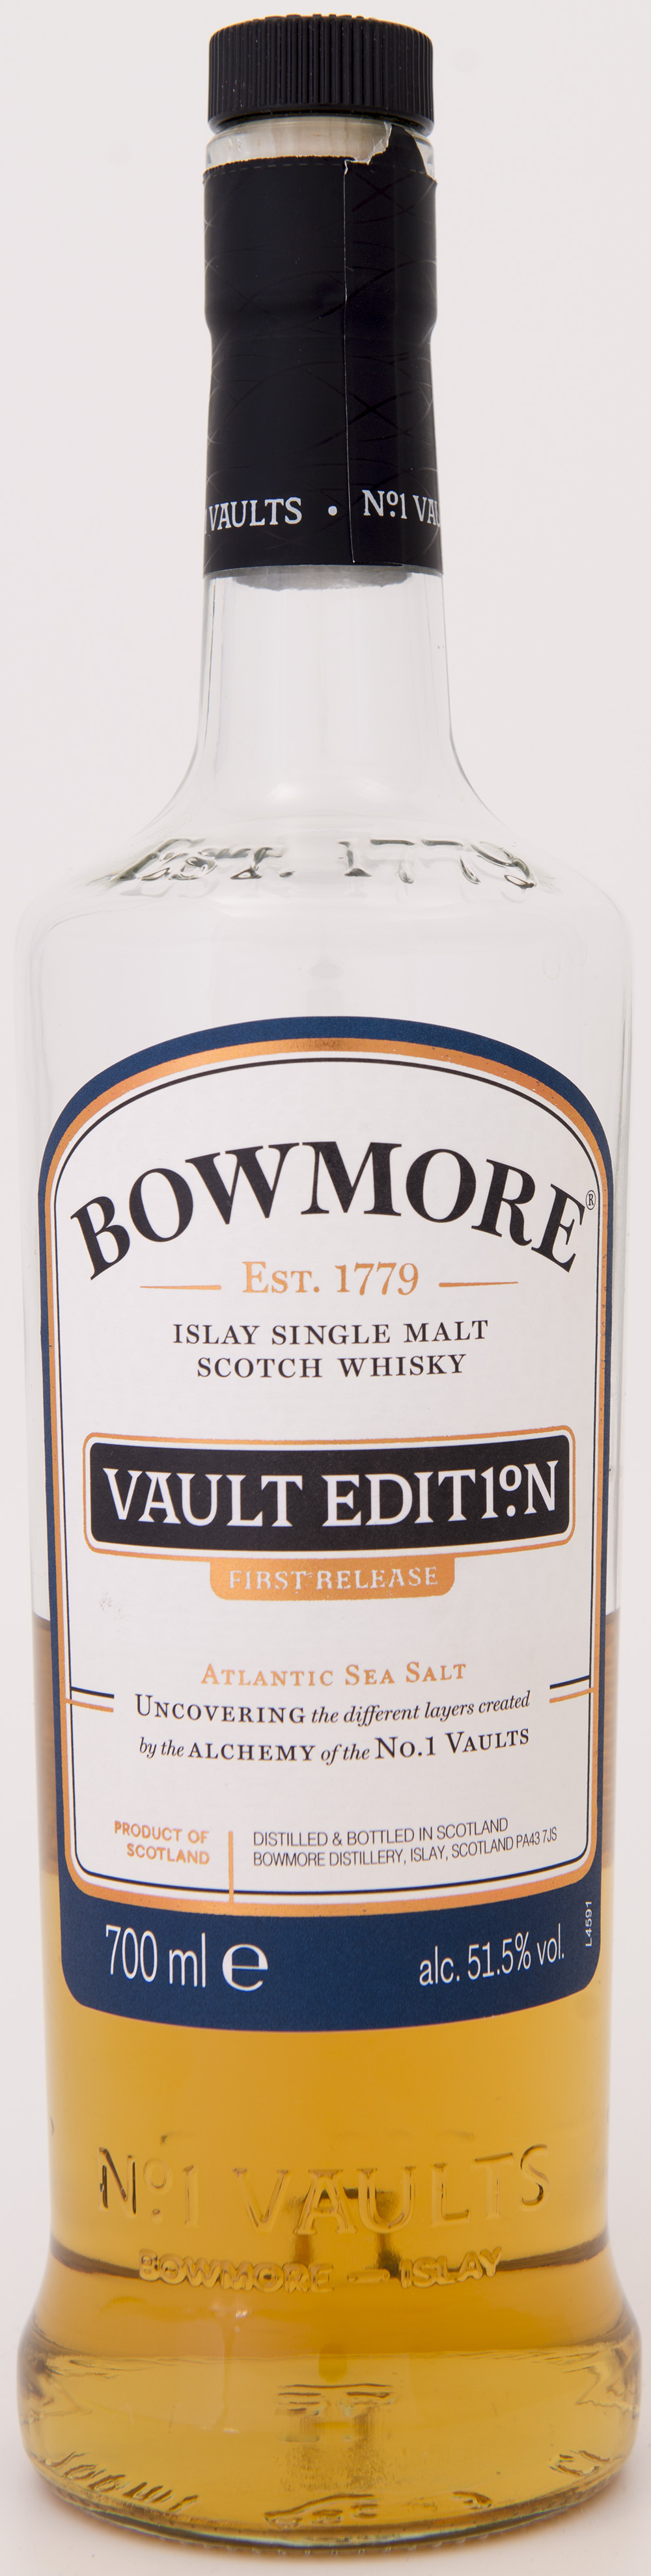 Billede: DSC_1617 - Bowmore Vaults No 1 first edition - bottle front.jpg